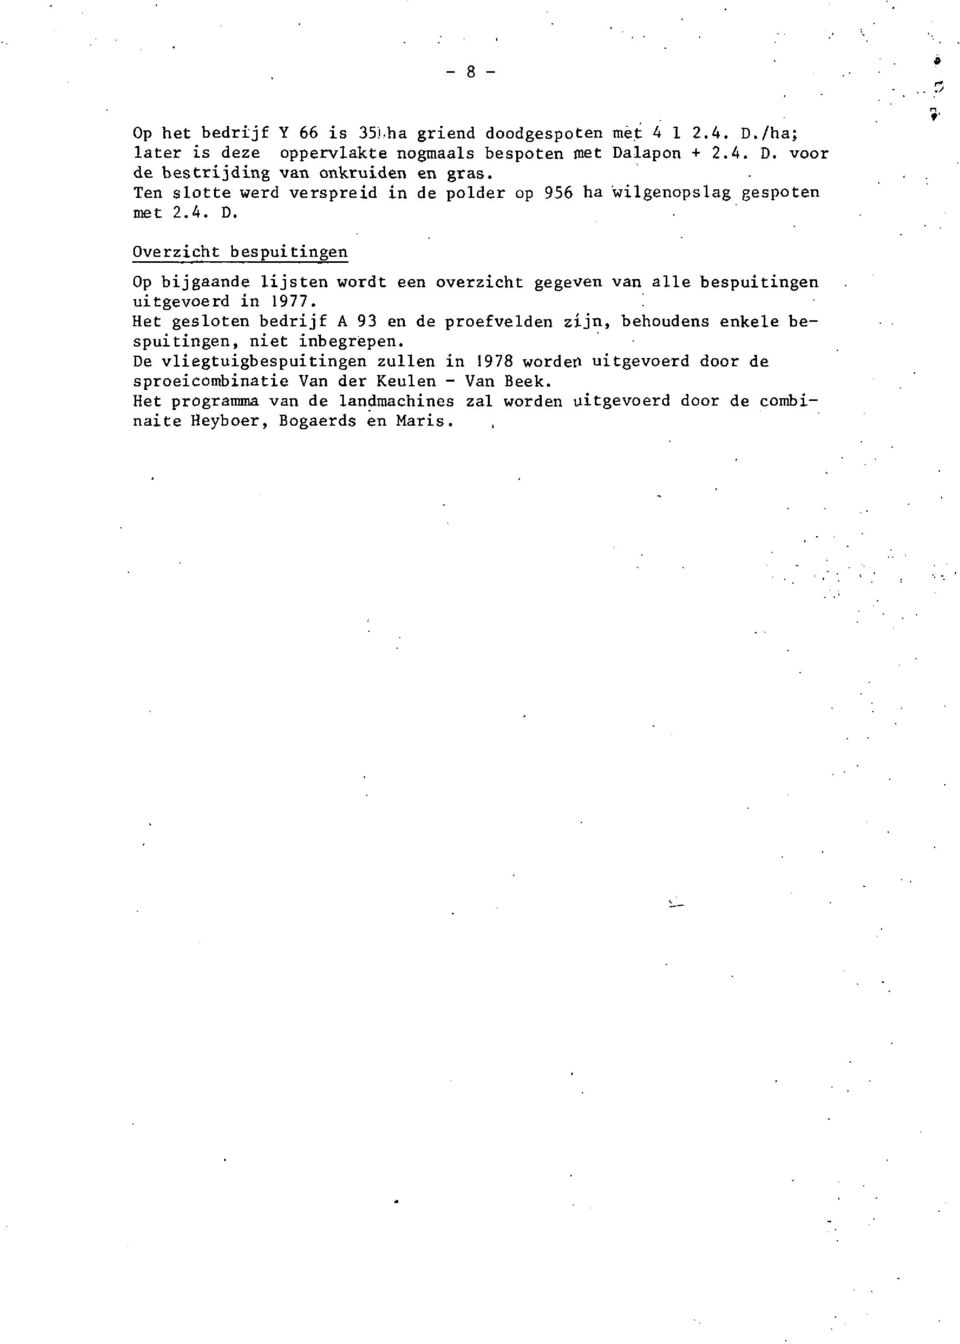 Overzicht bespuitingen Op bijgaande lijsten wordt een overzicht gegeven van alle bespuitingen uitgevoerd in 1977.